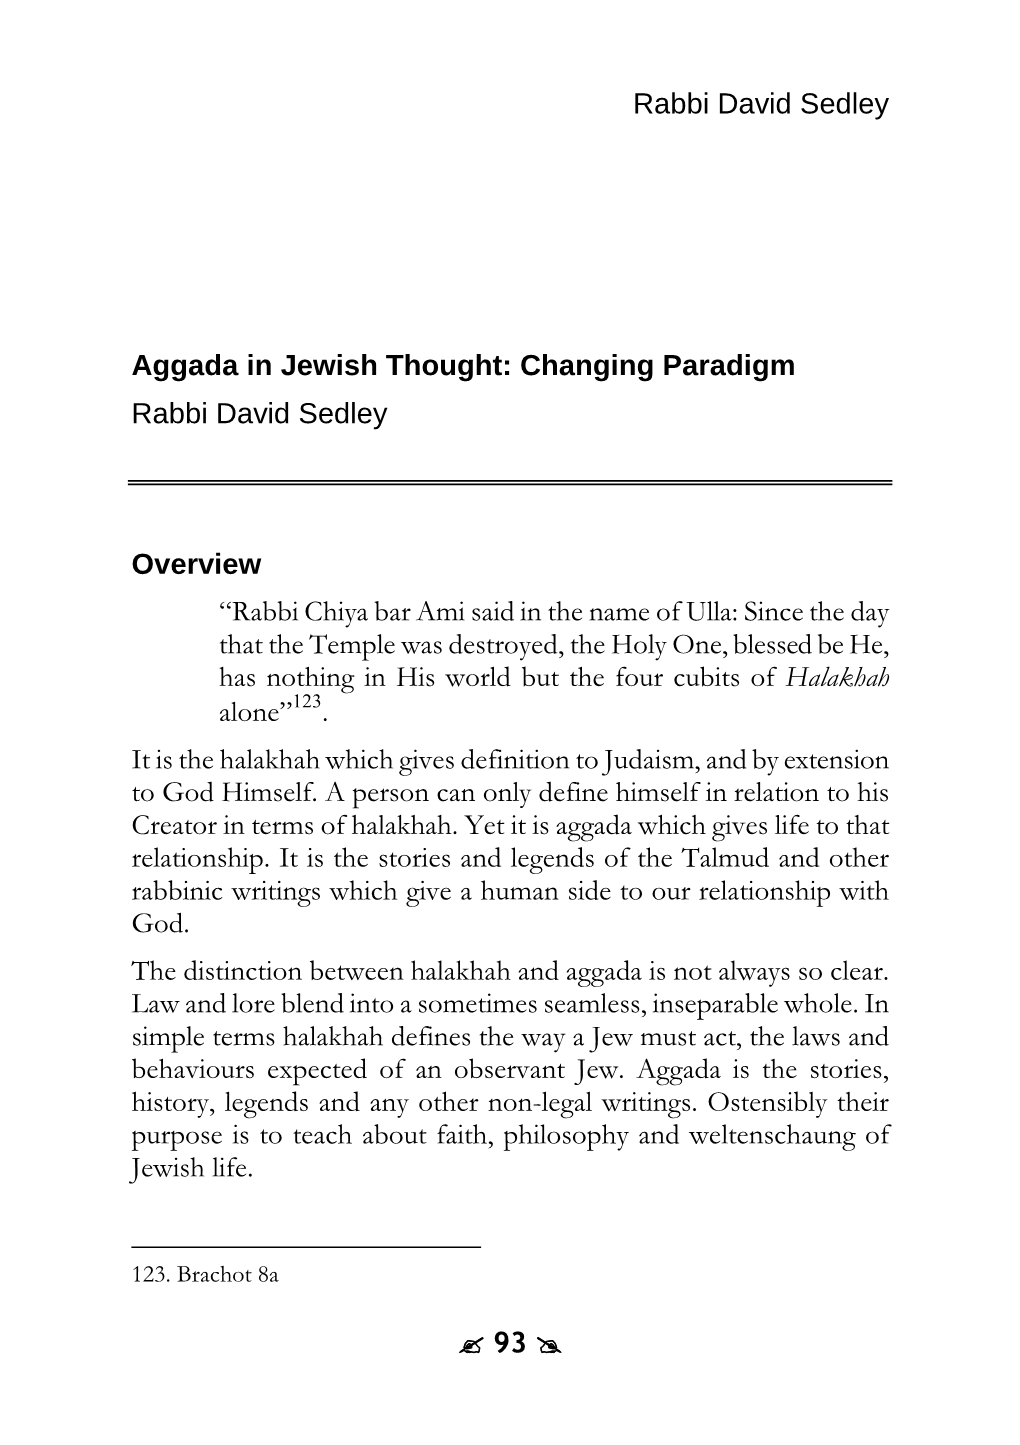 Aggada in Jewish Thought: Changing Paradigm Rabbi David Sedley